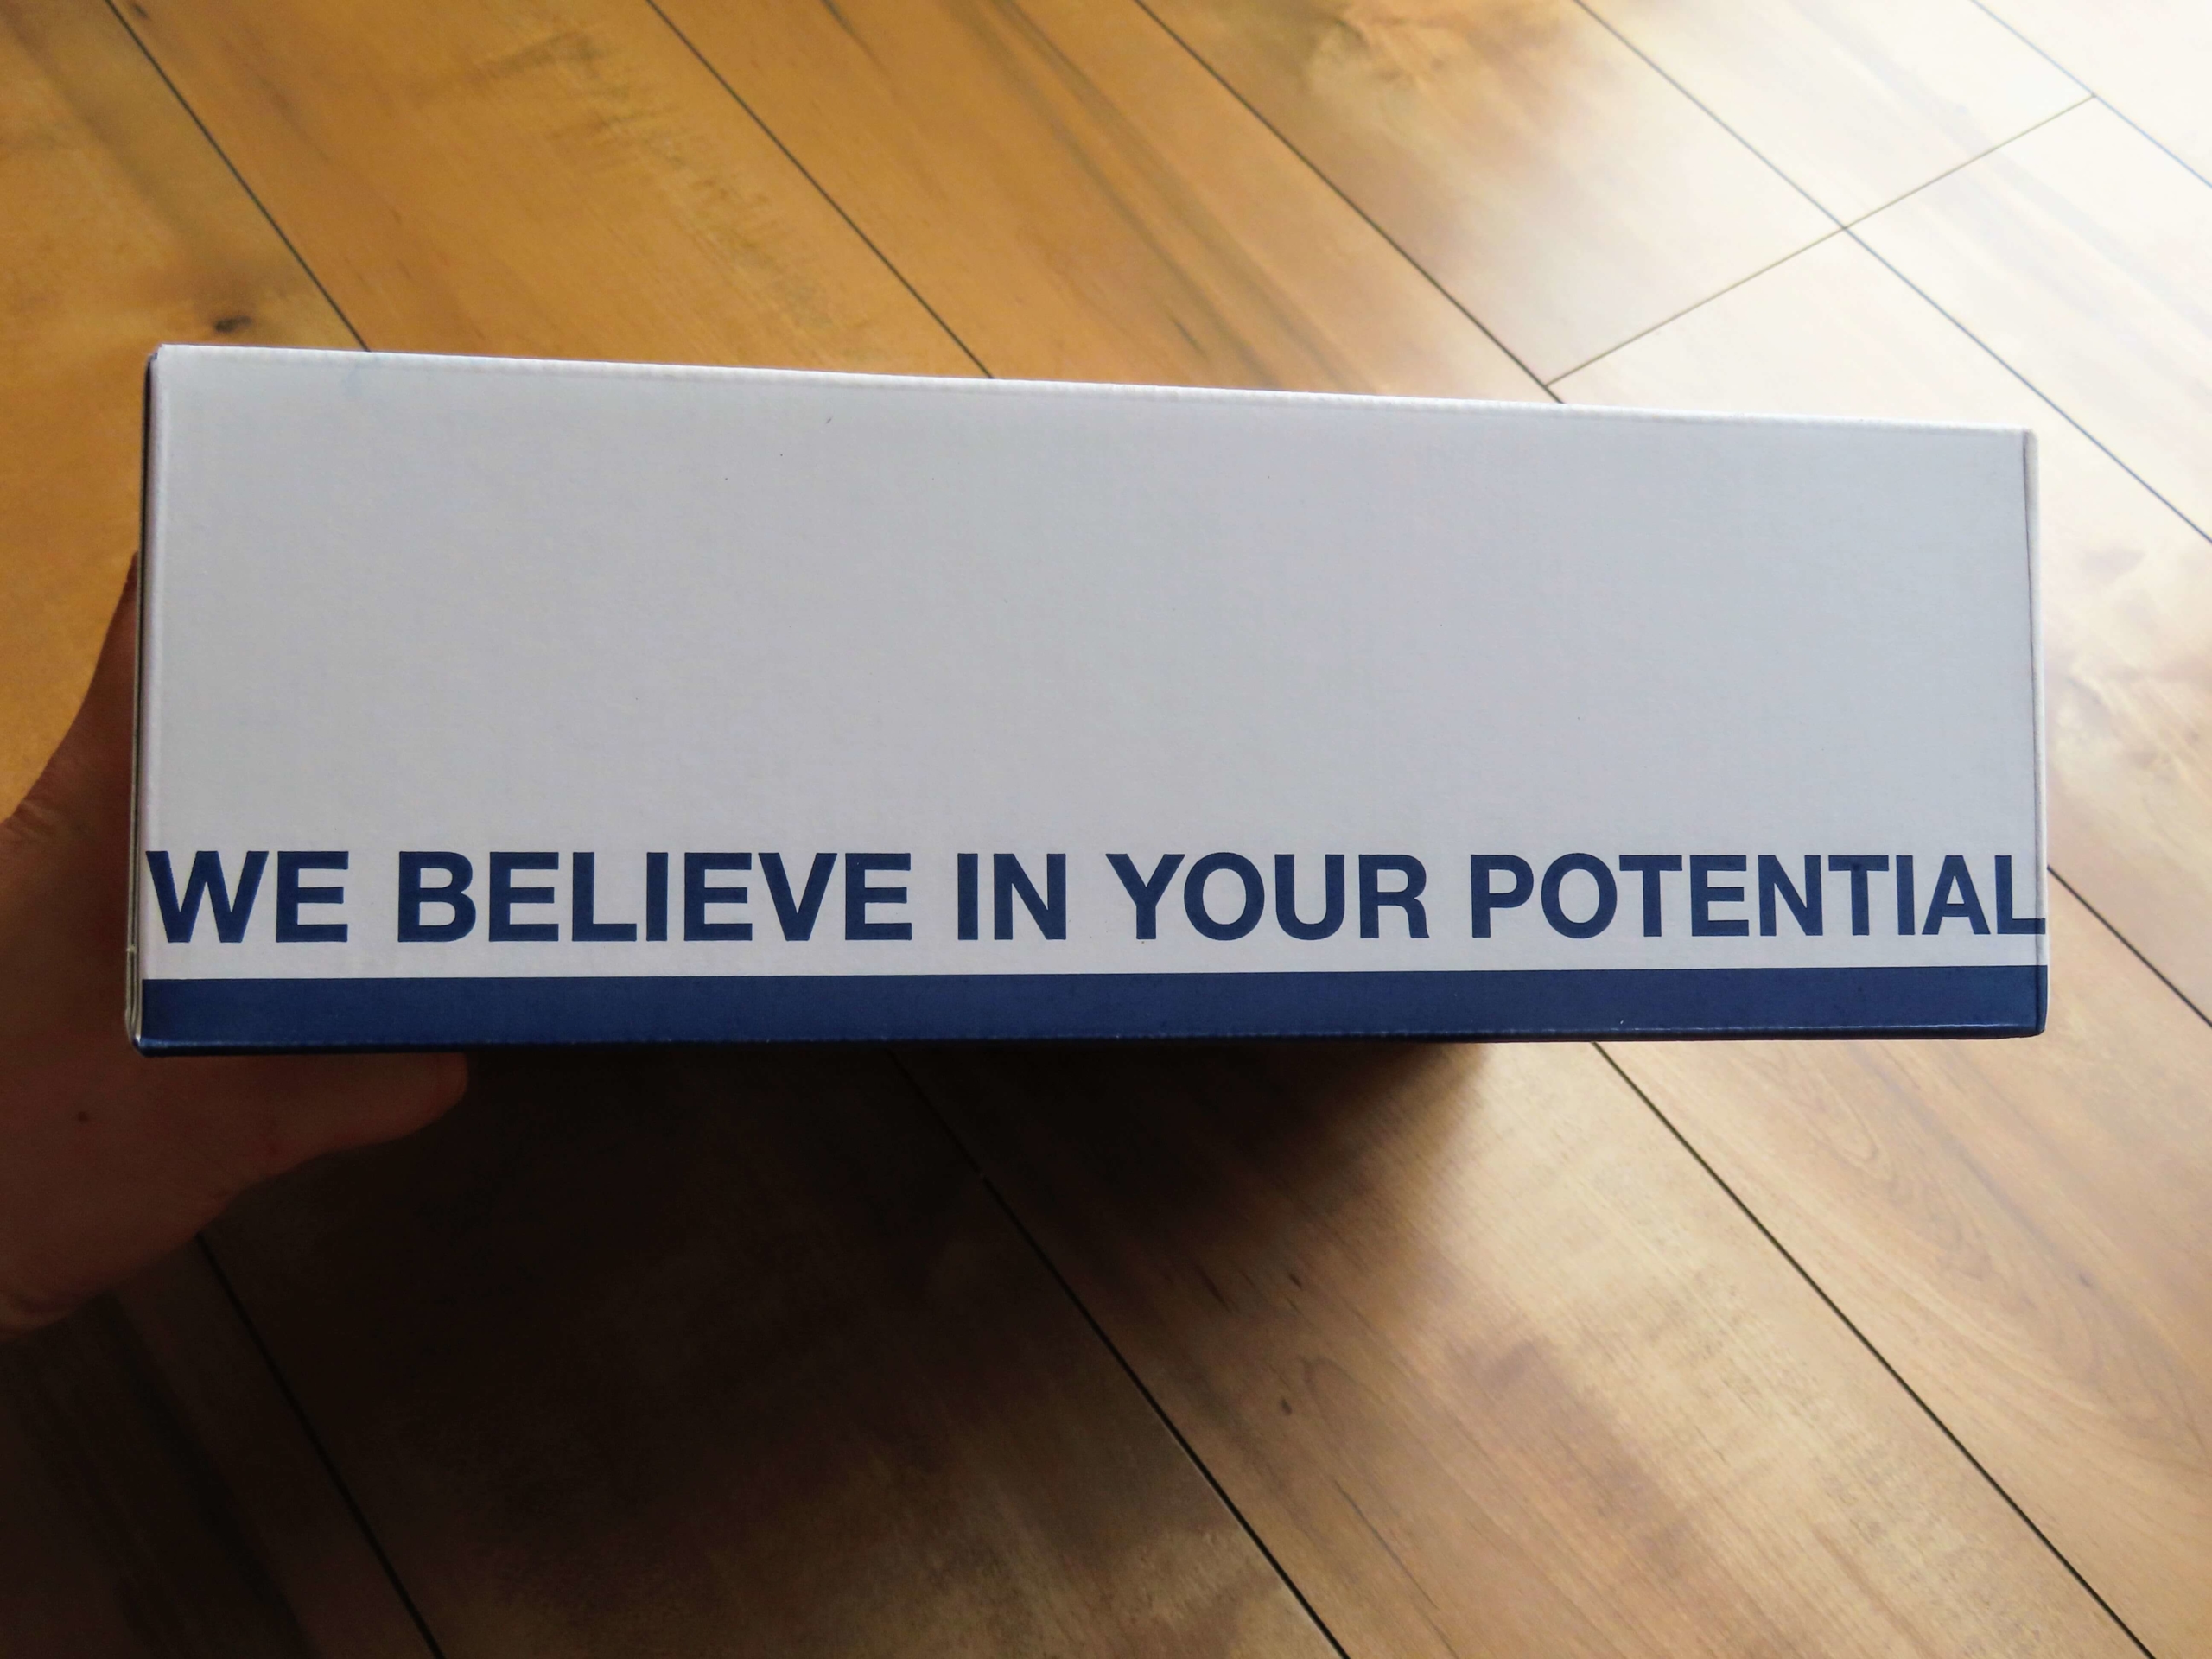 箱にはあなたの潜在能力を信じるとあります